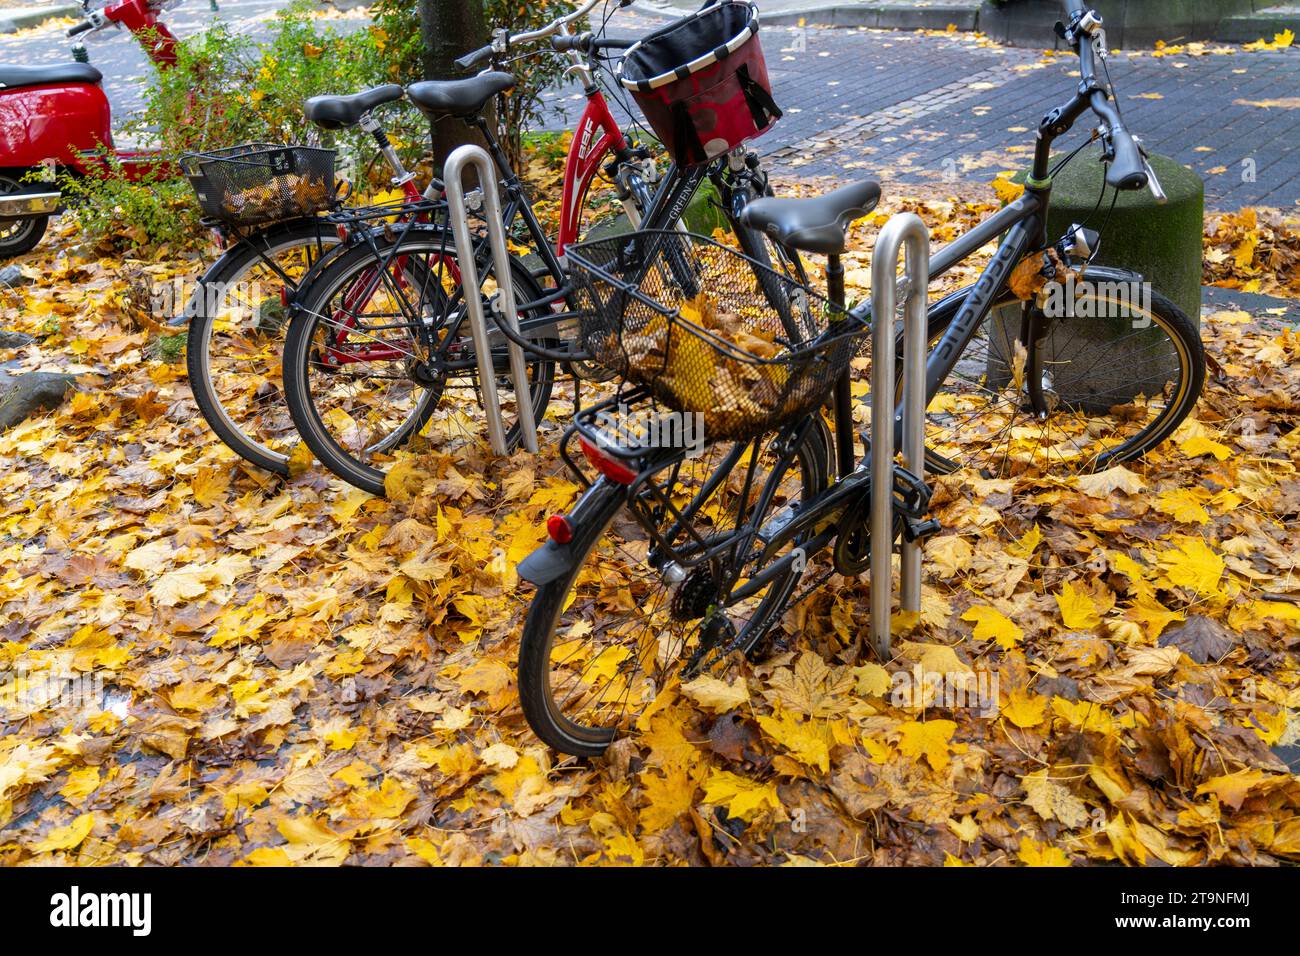 Herbst, Laub, Fahrradparkplatz, Stellplatz, Räder stehen auf einem Herbstlaub, Blätterteppich, Foto Stock